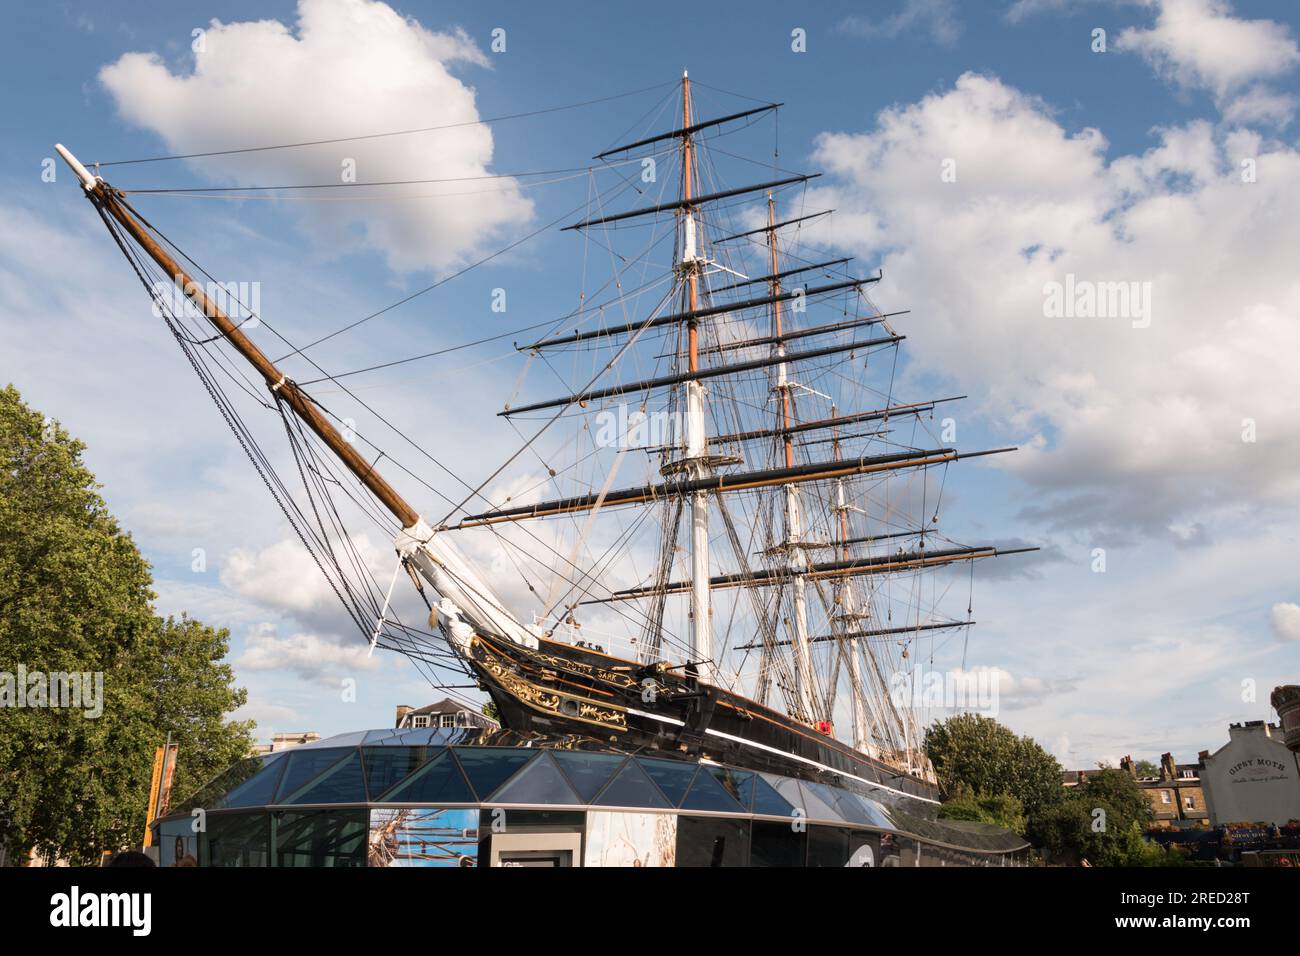 Nannie, die Galionsfigur des Schiffs unter dem Bugsprit des großartigen Cutty Sark Teeklipper-Großschiffs in Greenwich, London, England, Großbritannien Stockfoto